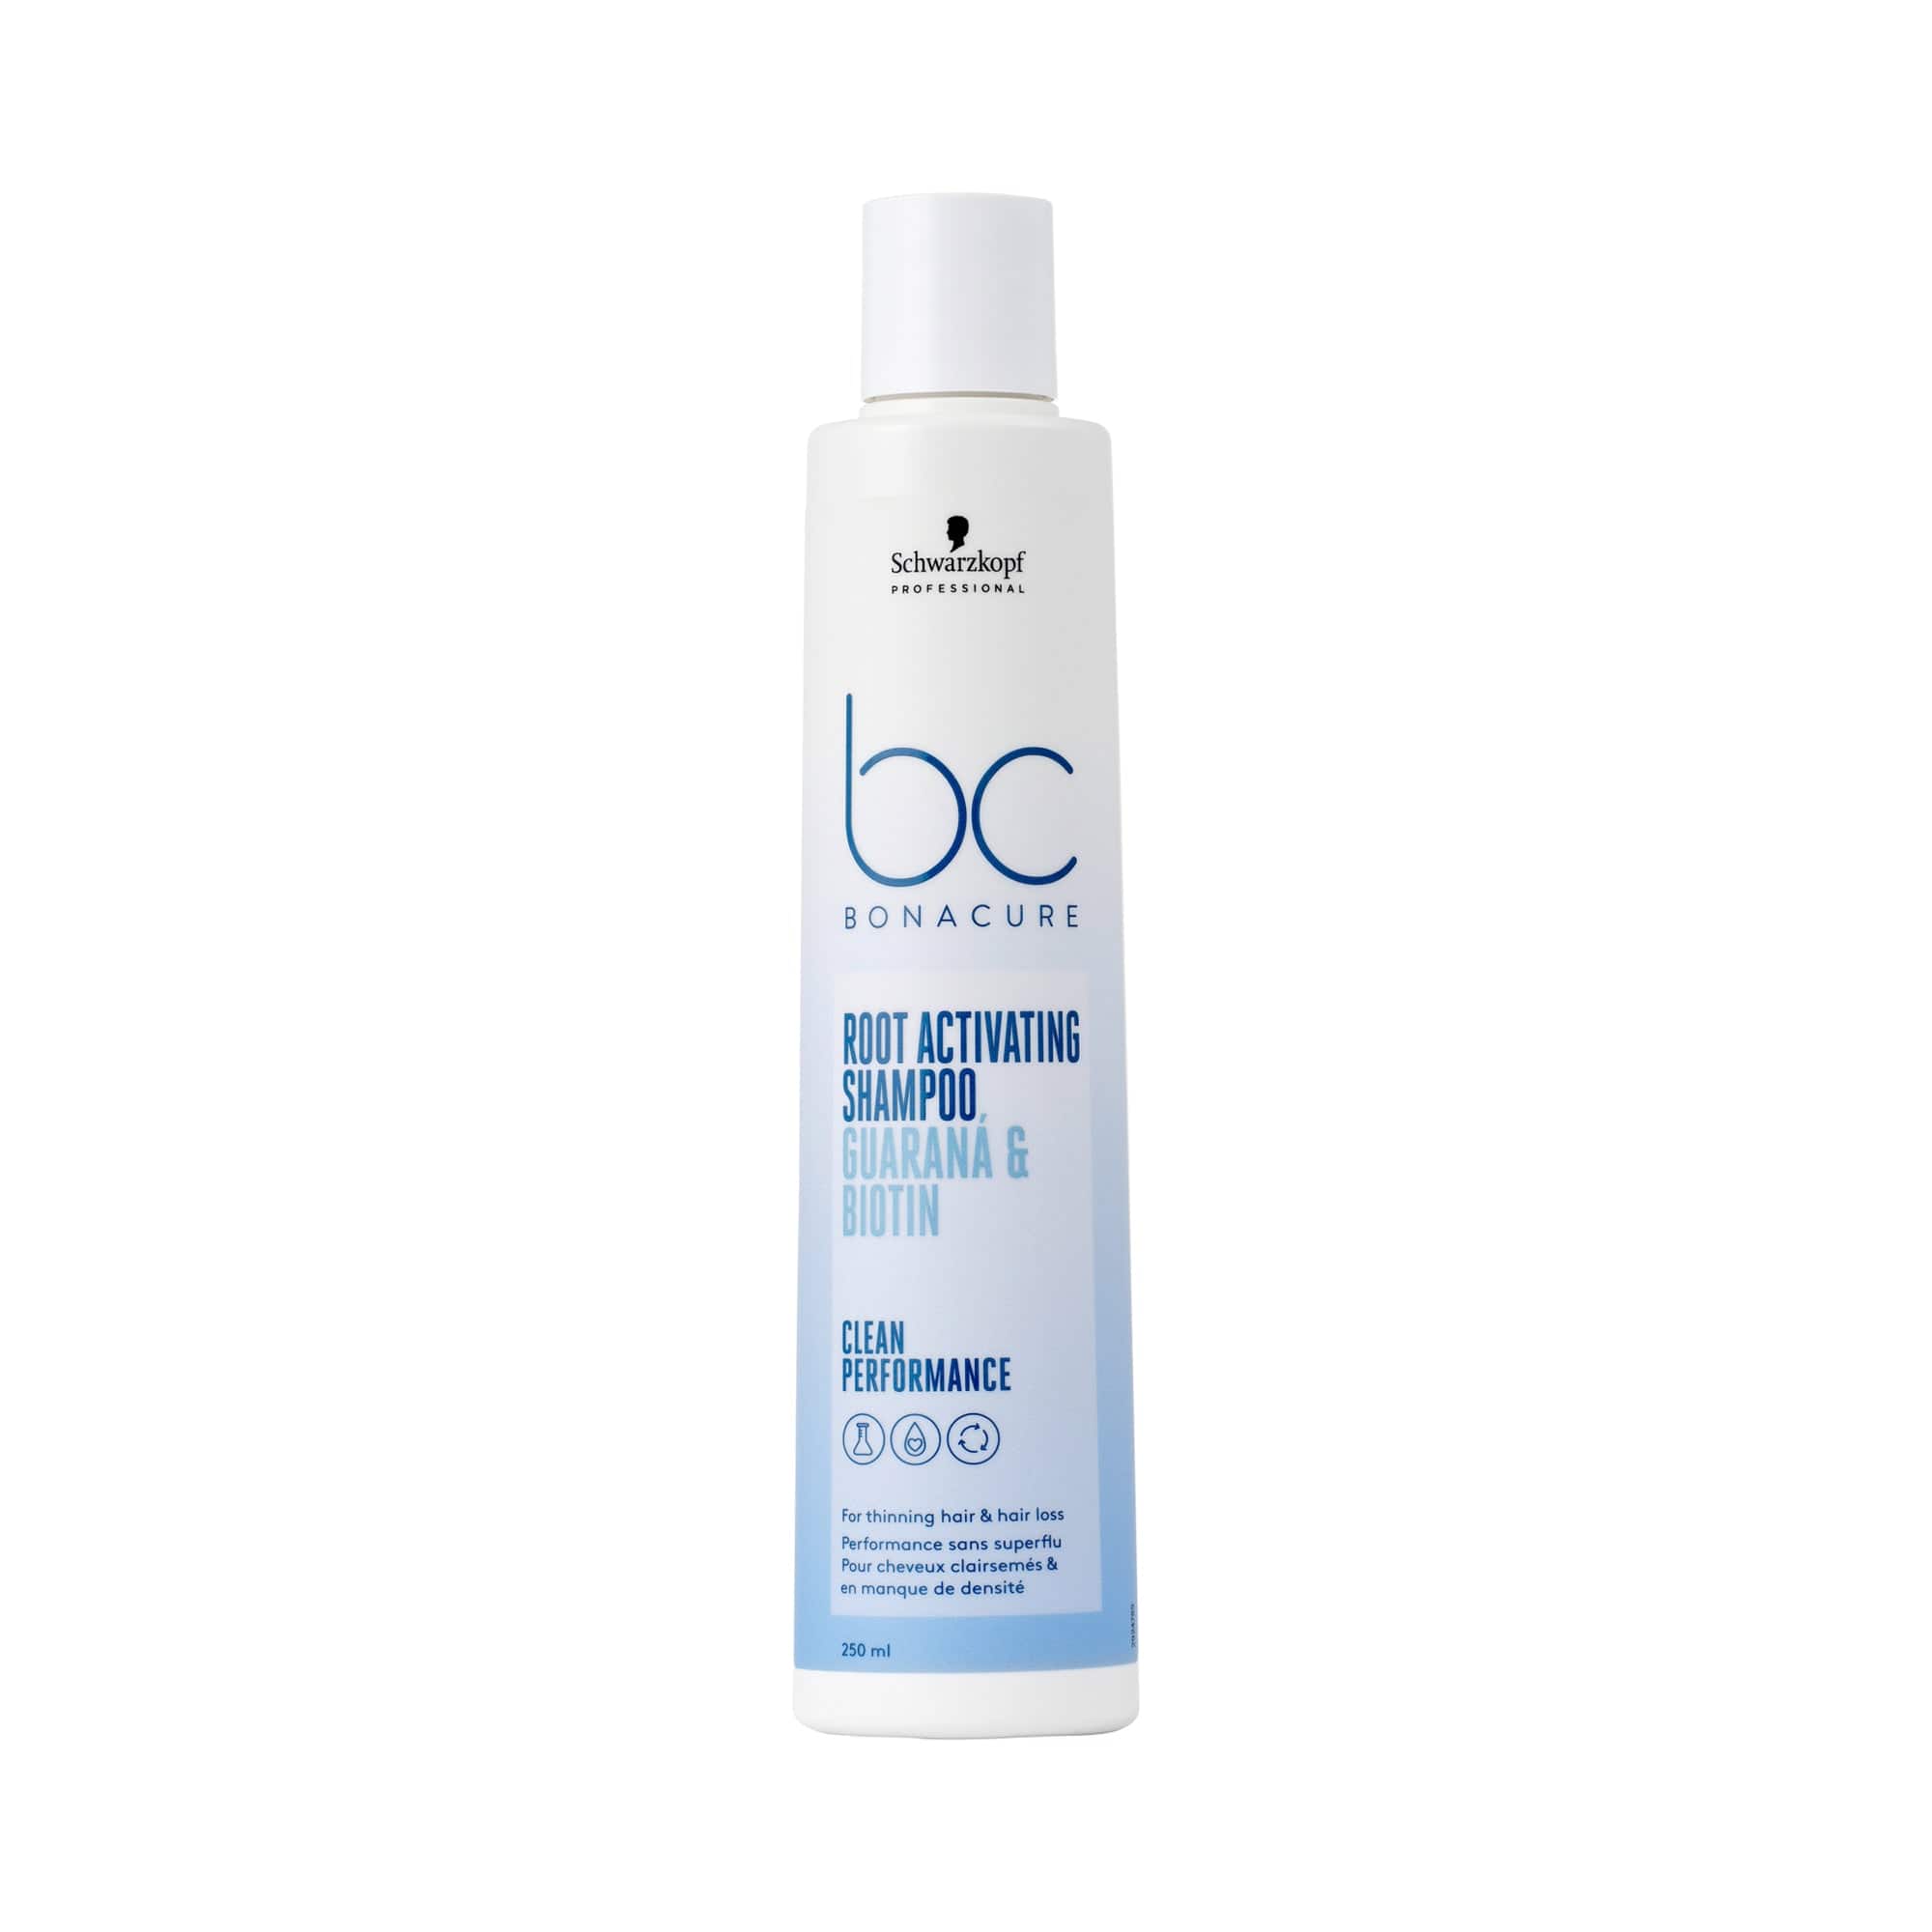 BC Bonacure Shampoo Bonacure Scalp Genesis Champú Activador de Raíces 250ml Roberta Beauty Club Tienda Online Productos de Peluqueria